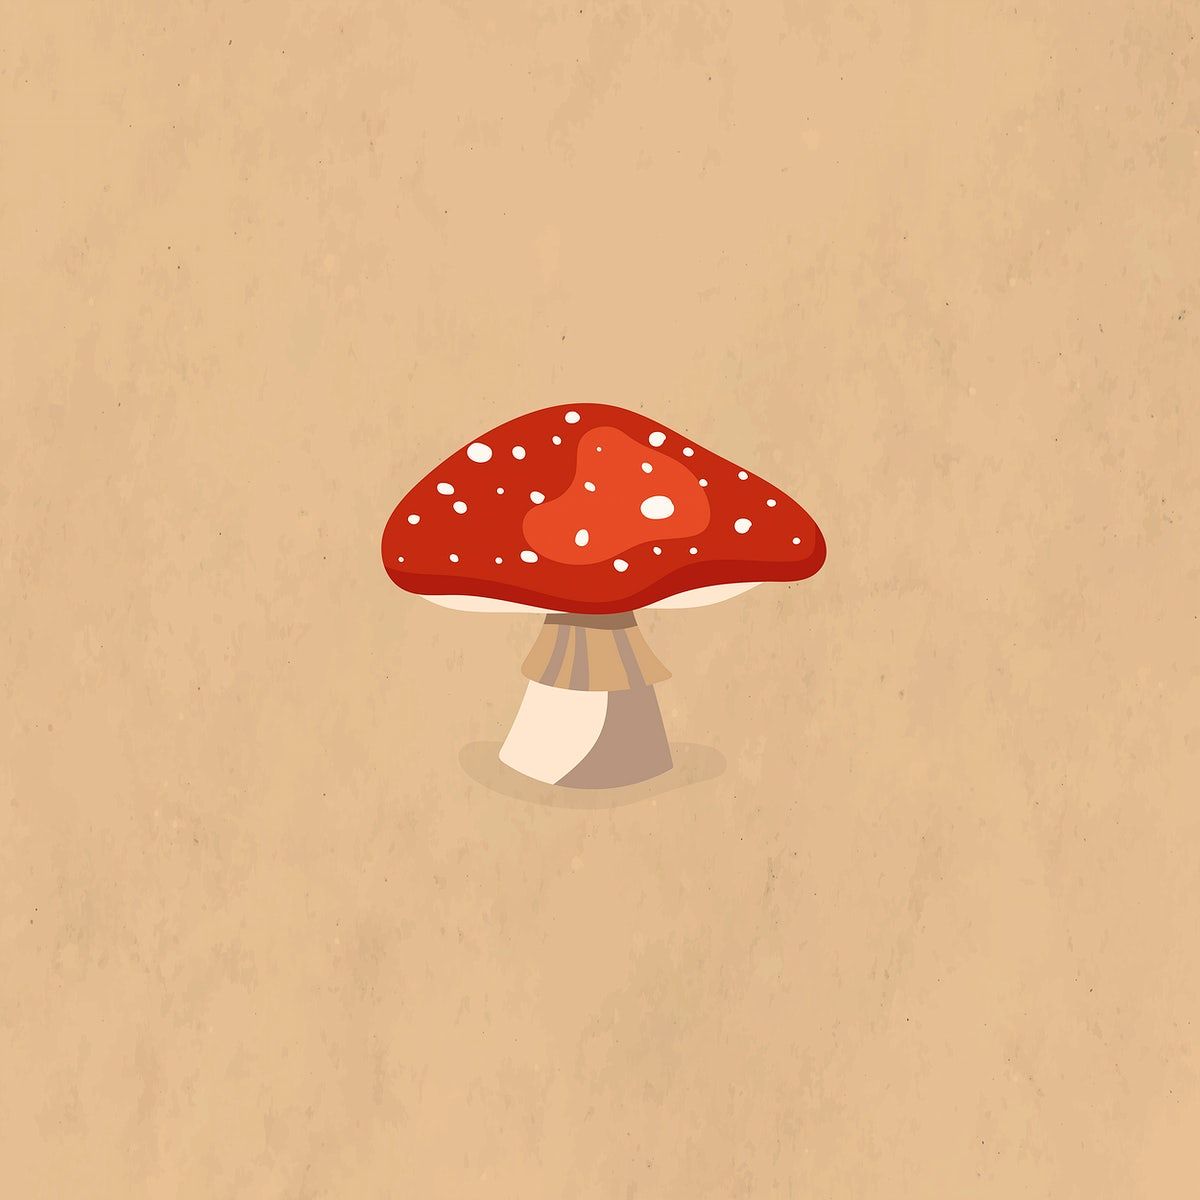 Red Mushroom Autumn Design Element Vector Premium Image By